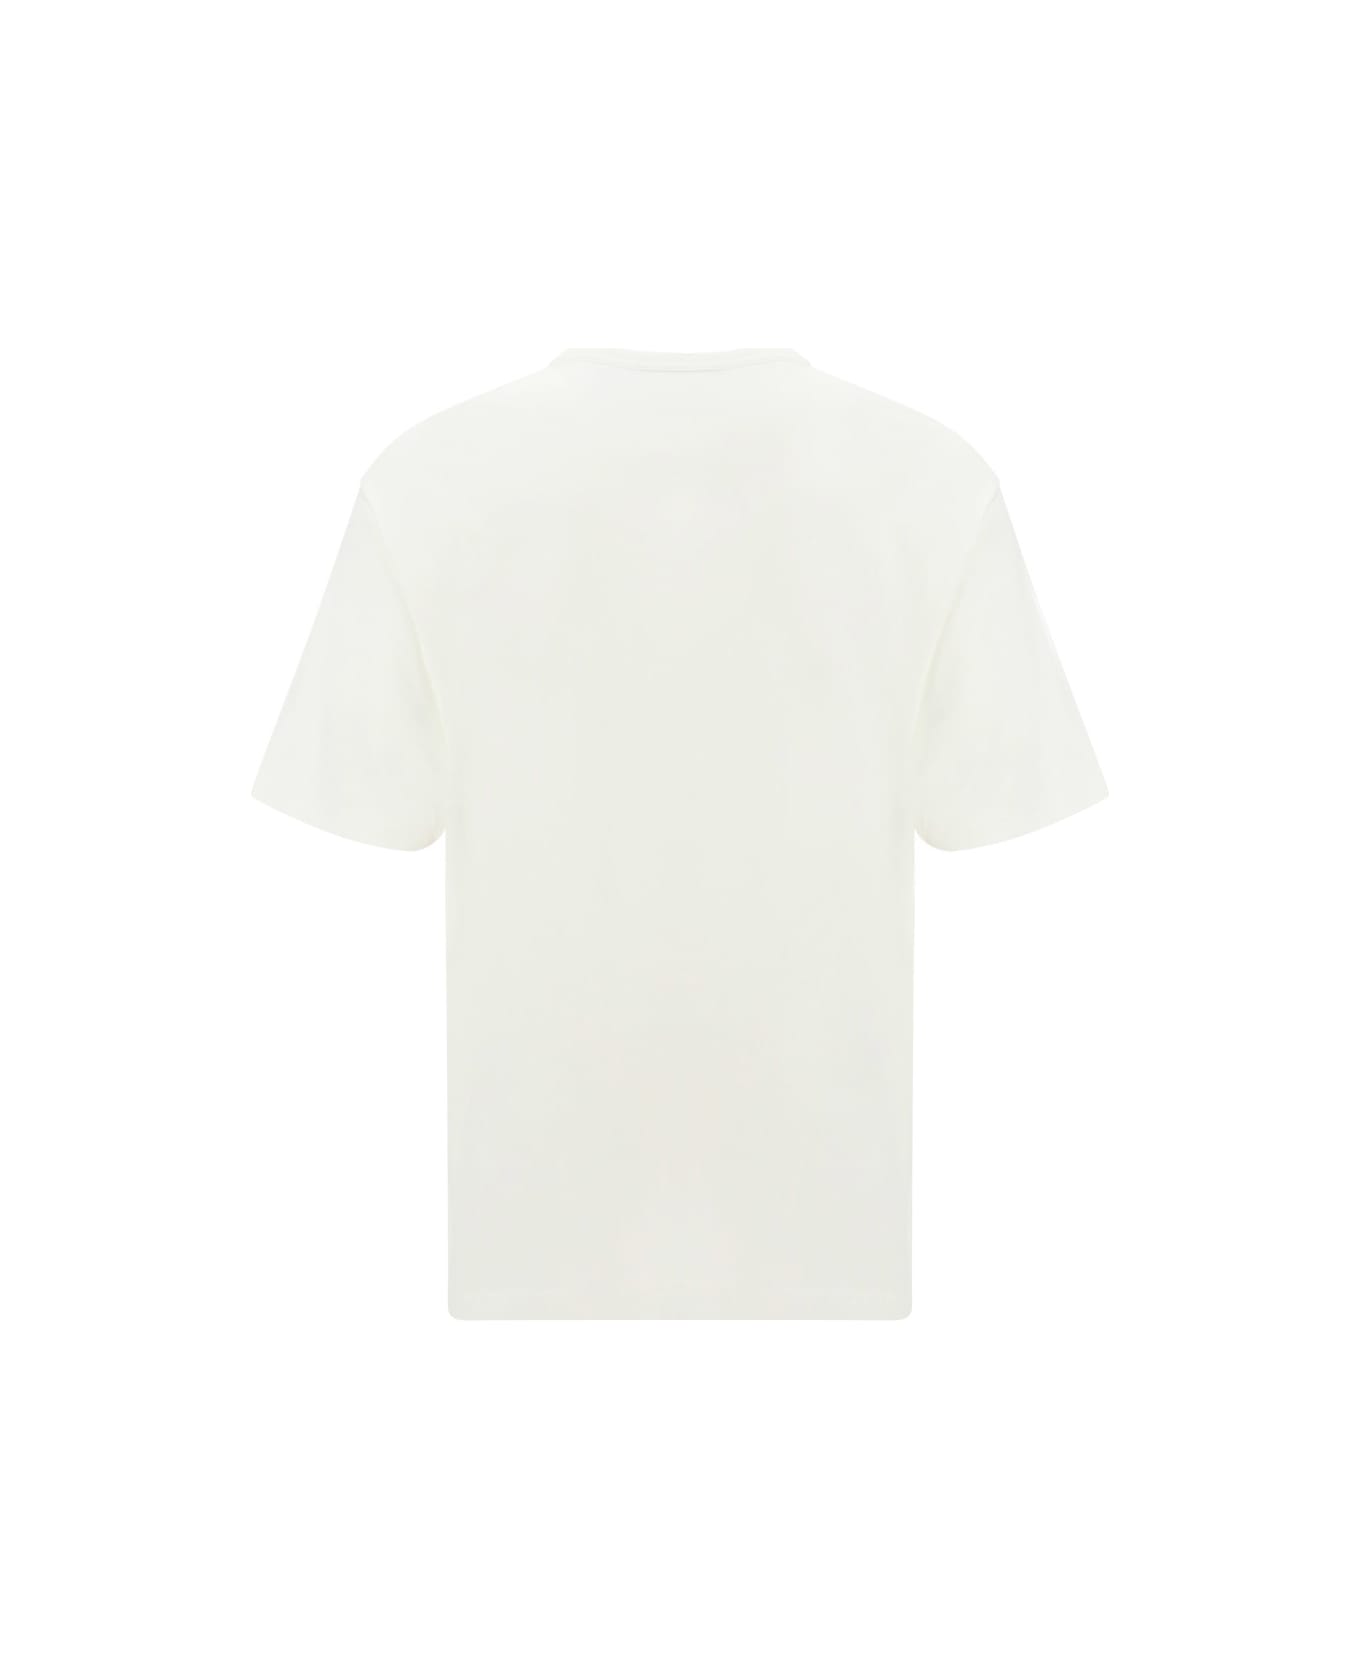 New Studios T-shirt - White